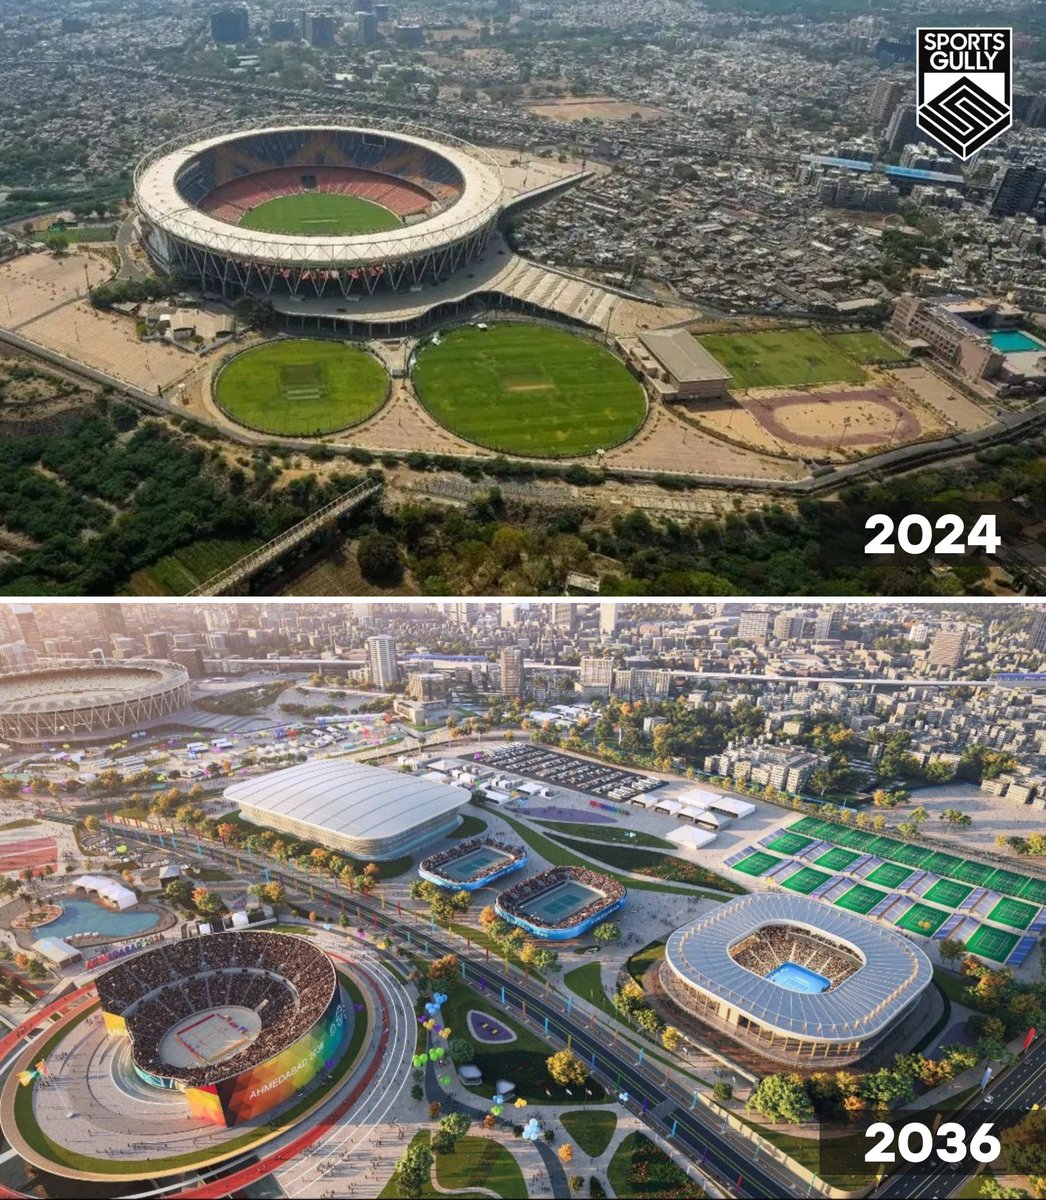 India's bid for Olympics 2036 Ahmedabad 🇮🇳